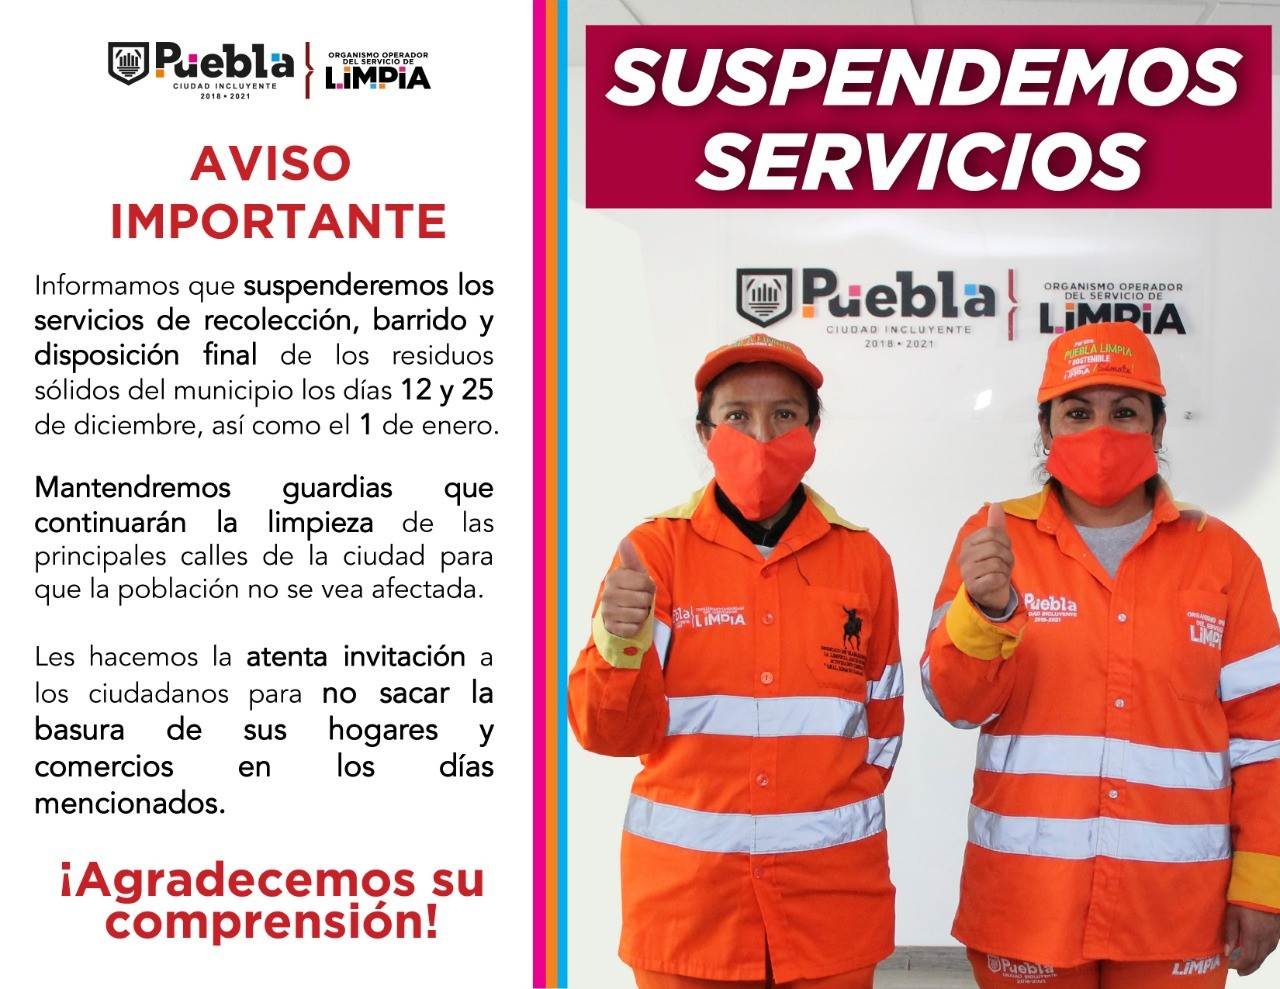 Imagen que dice: Los días 12 y 25 de diciembre, así como el 1 de enero del 2021 no habrá servicio de recolección y barrido de basura, informó el Organismo Operador del Servicio de Limpia del Municipio de Puebla. (OOSL).